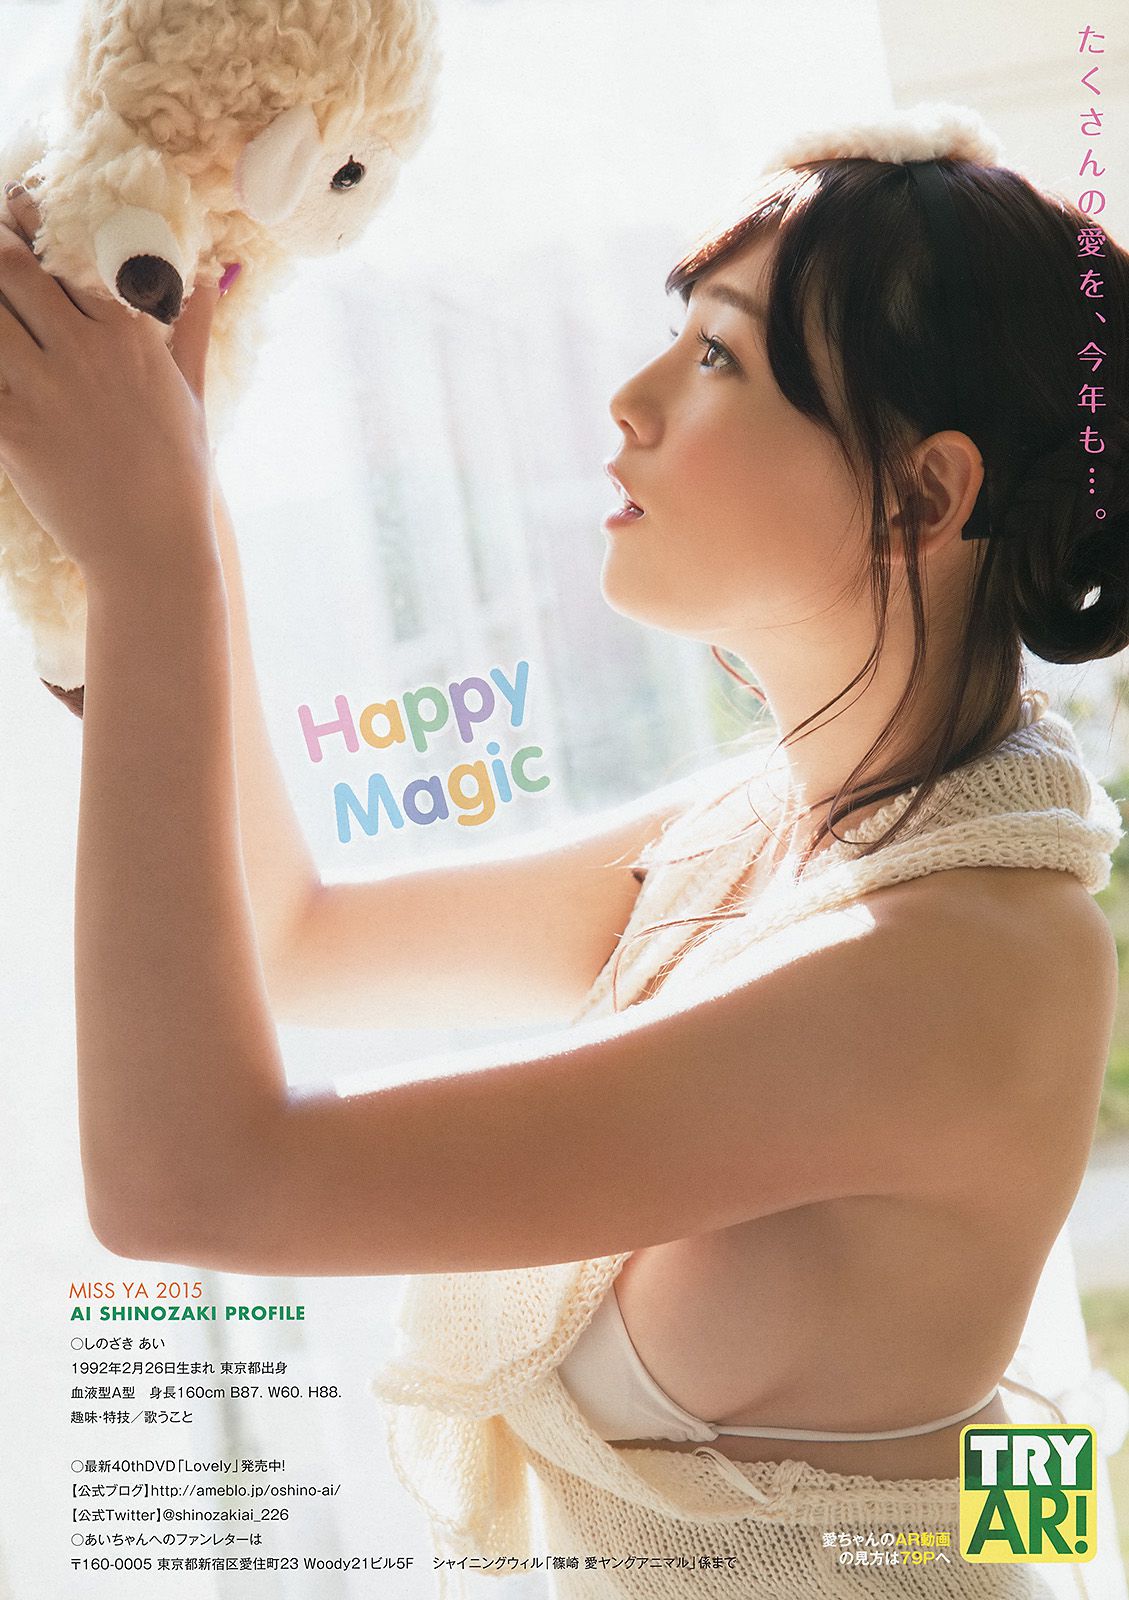 Ai Shinozaki Kaneko Shiori Minato Riku [Young Animal Arashi 岚 Special Edition] No.09 2015 Photograph Page 12 No.ec425b